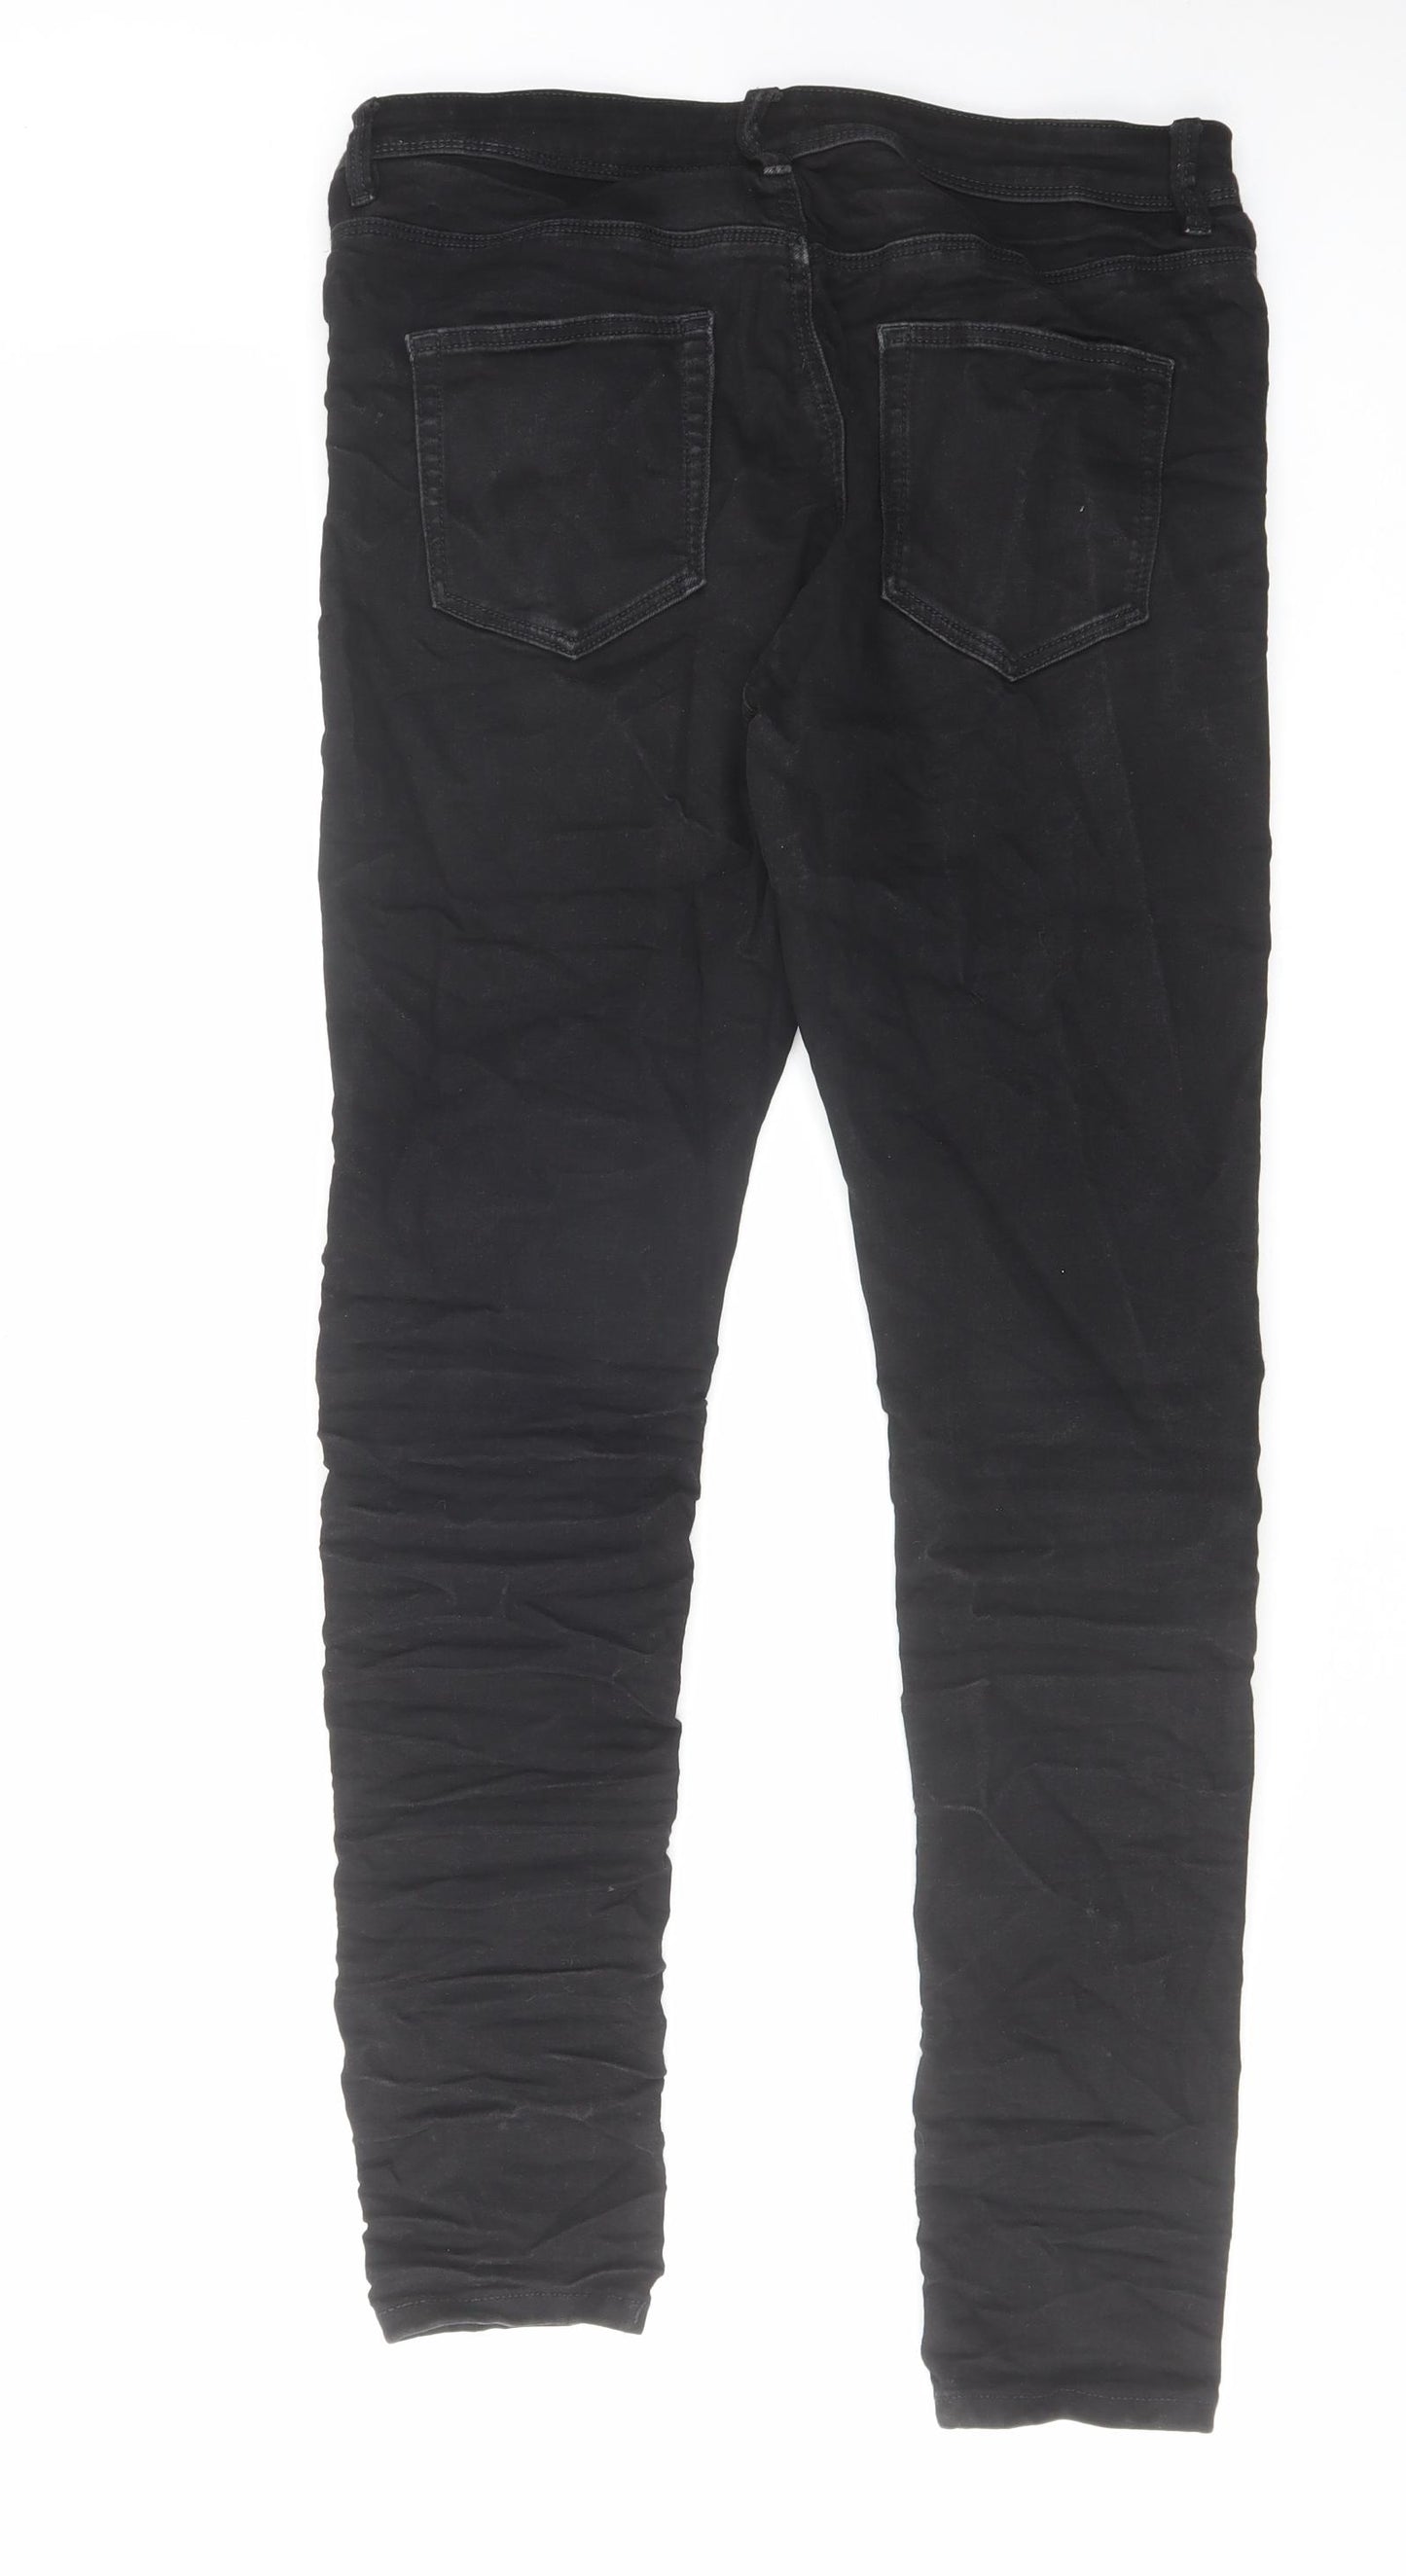 River Island Mens Black Cotton Skinny Jeans Size 34 in L32 in Regular Zip